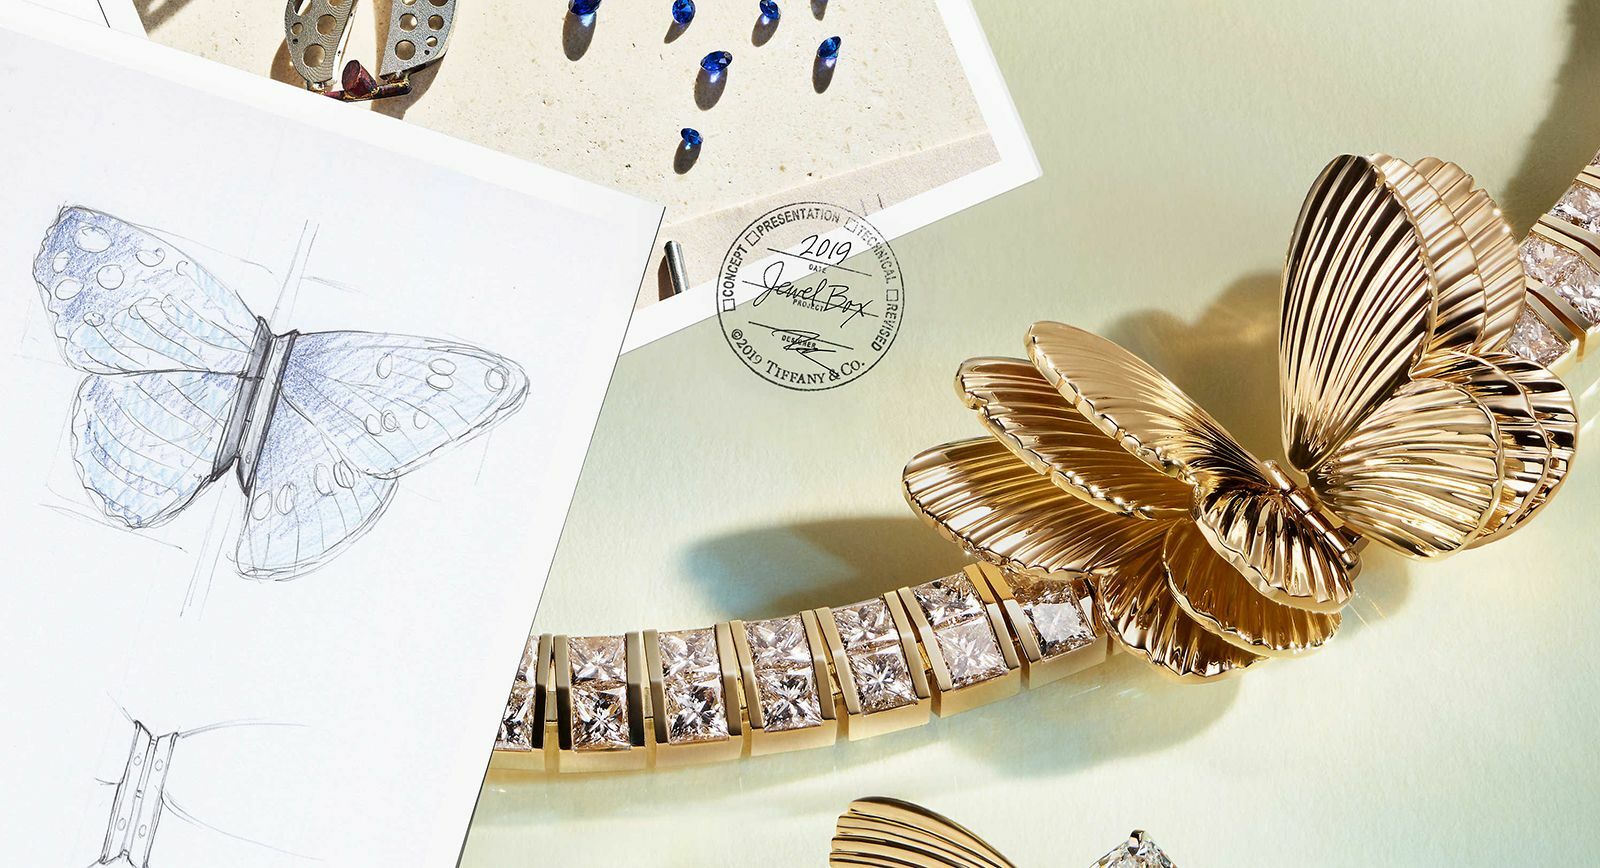 Колье золото бриллианты Blue Book 2019 года от Tiffany&Co. Шкатулка Tiffany